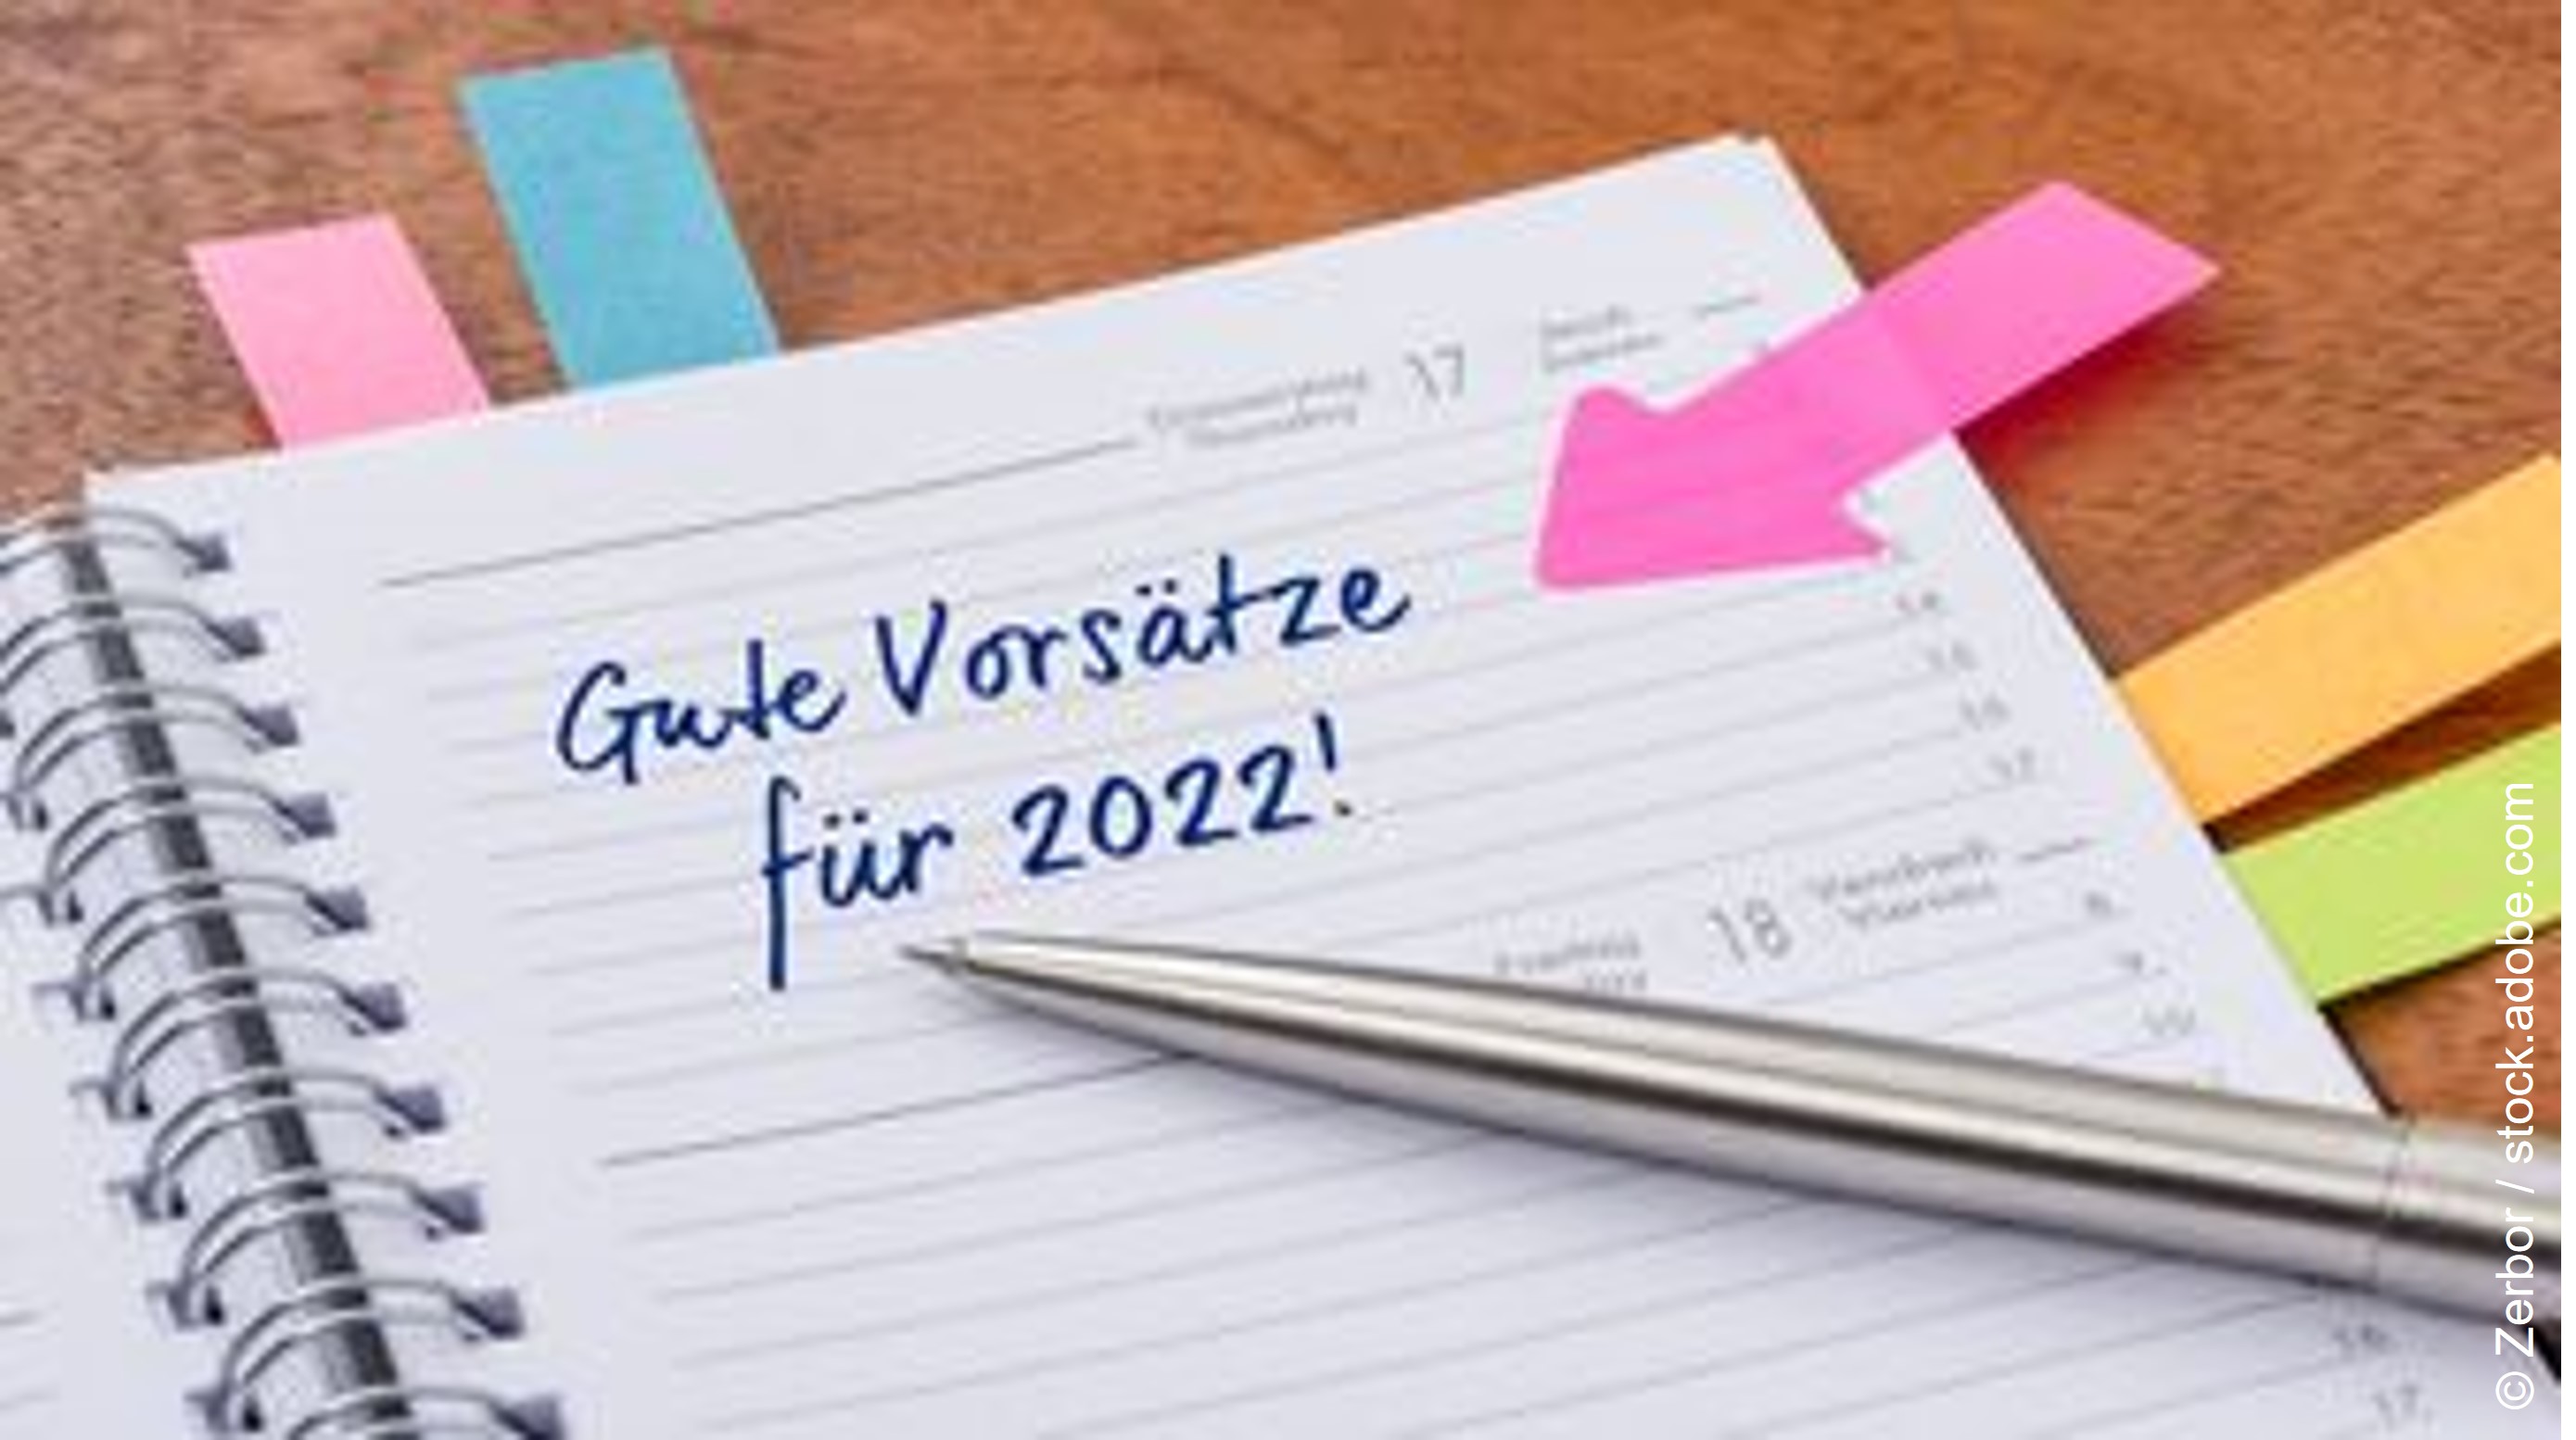 Ein Kalendereintrag mit einem pinken Seitenmarker: Gute Vorsätze für 2022!